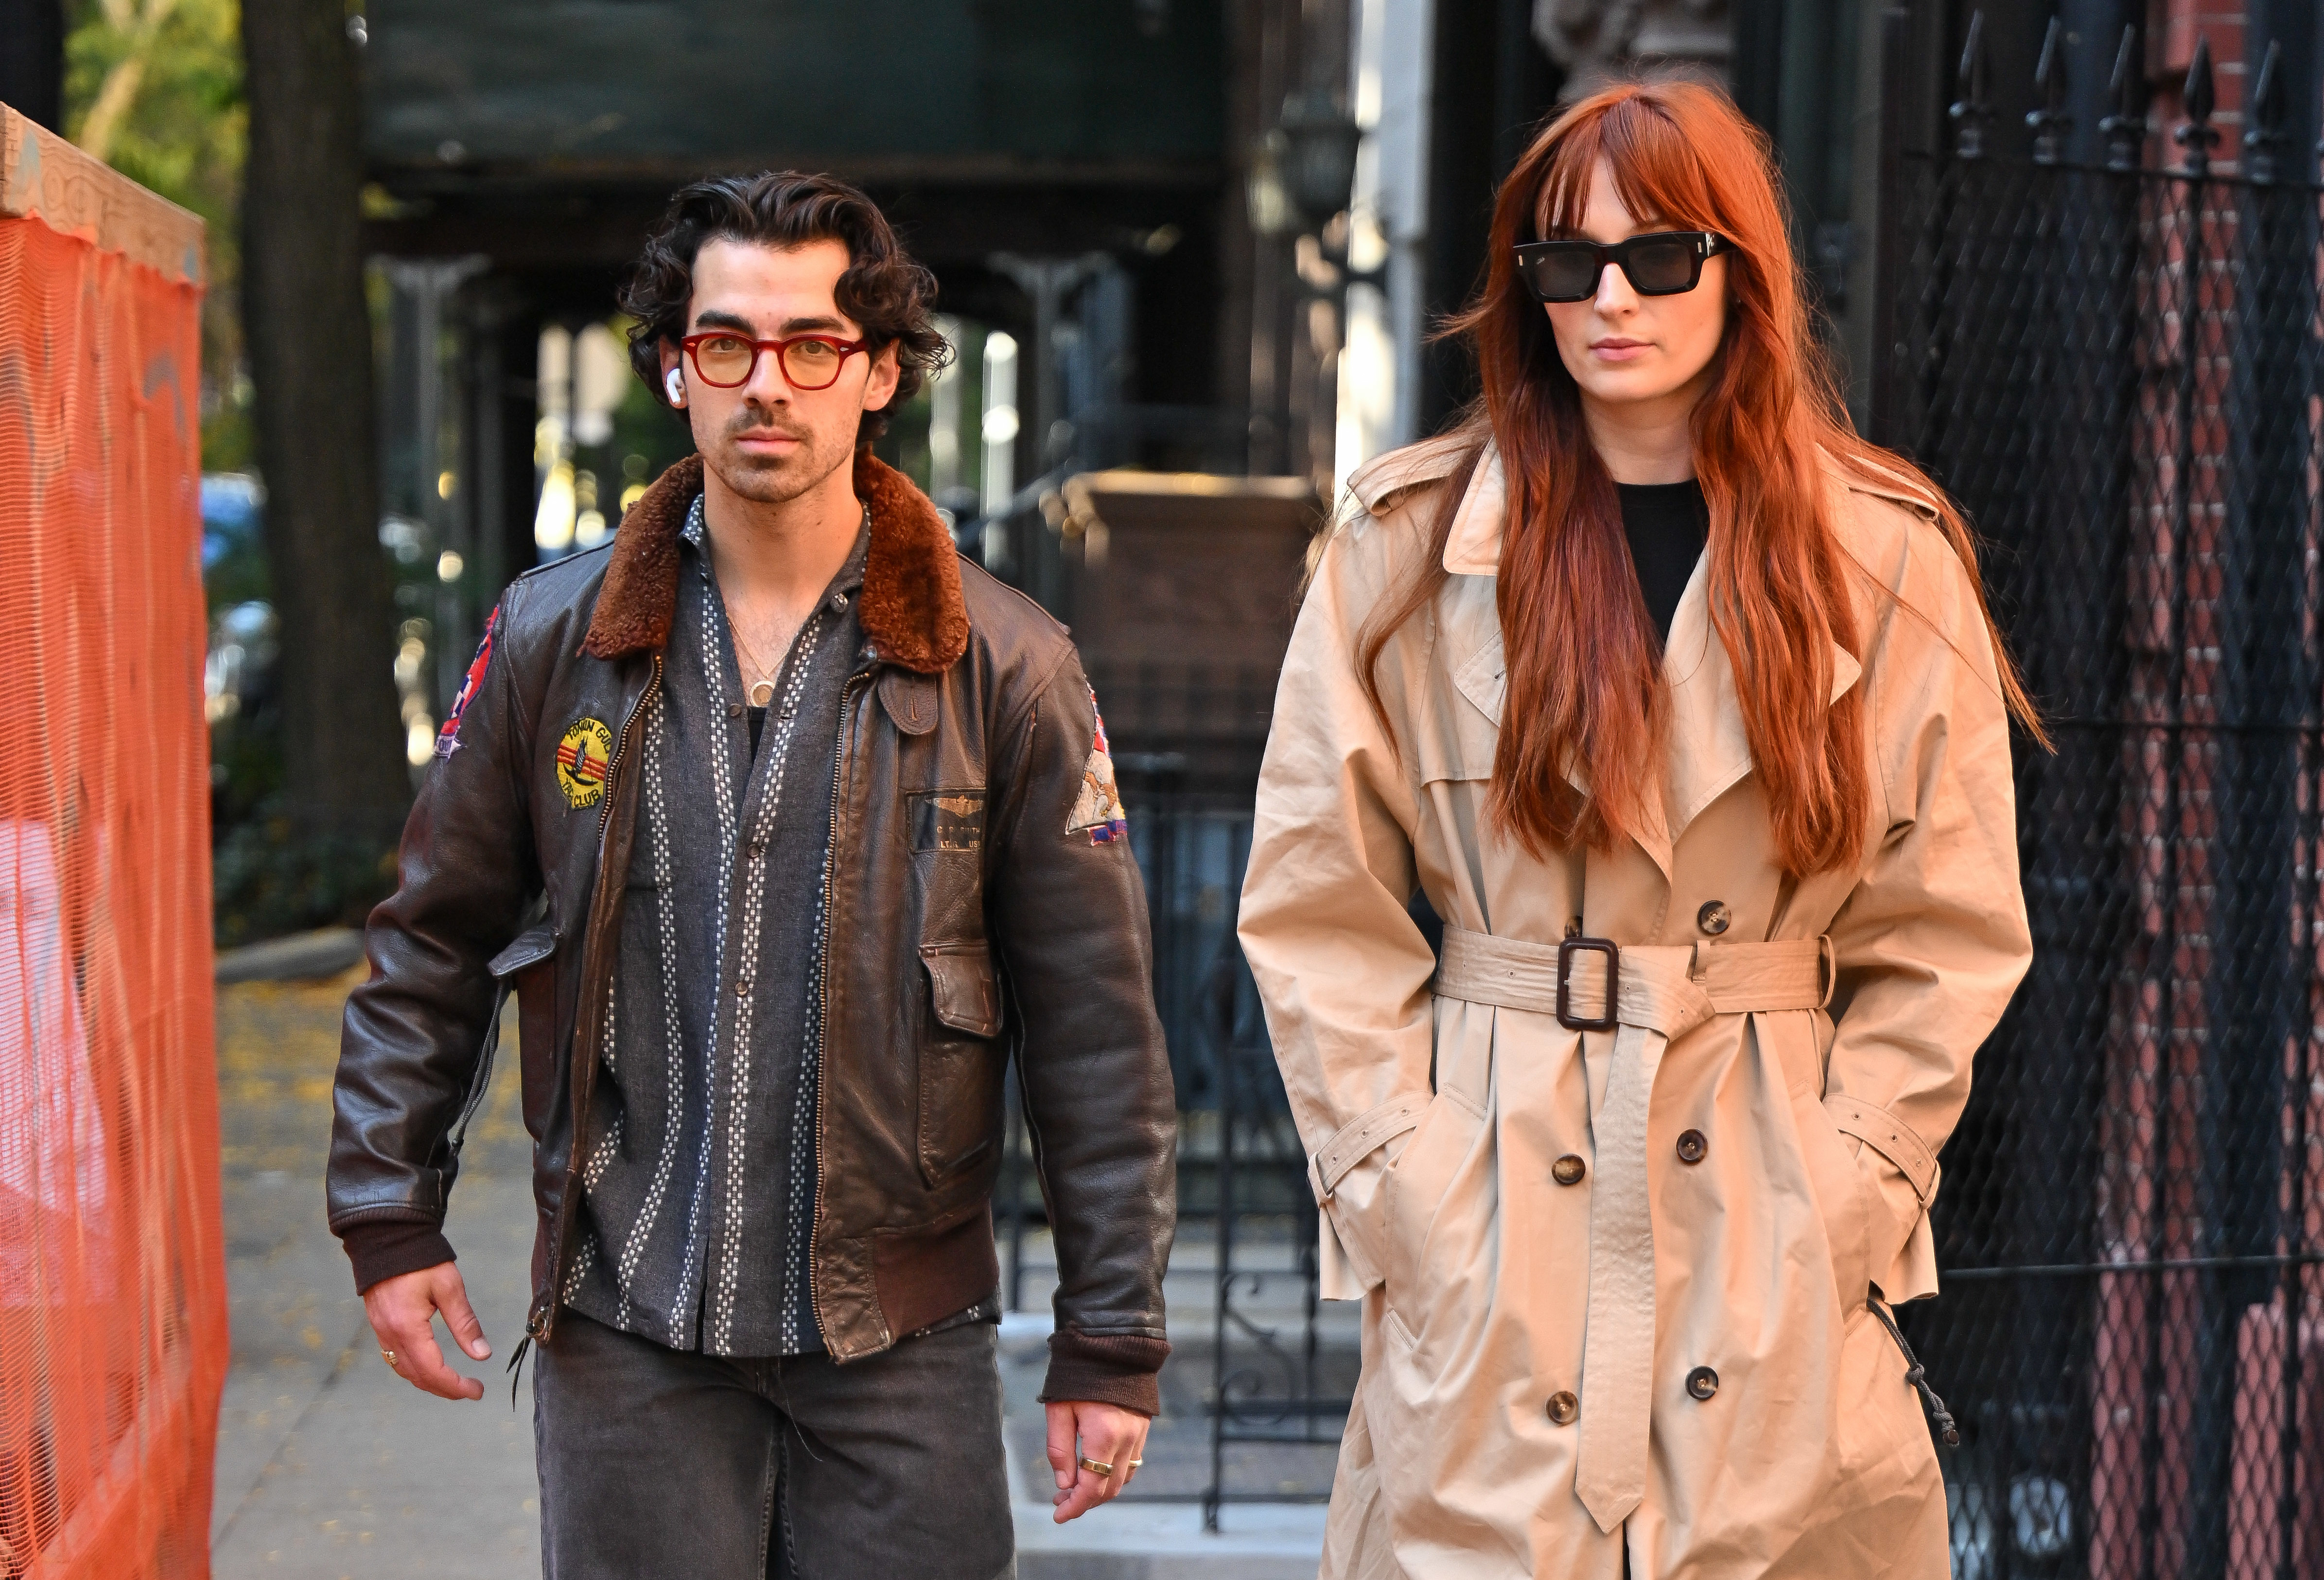 Joe Jonas and Sophie Turner walking down the street